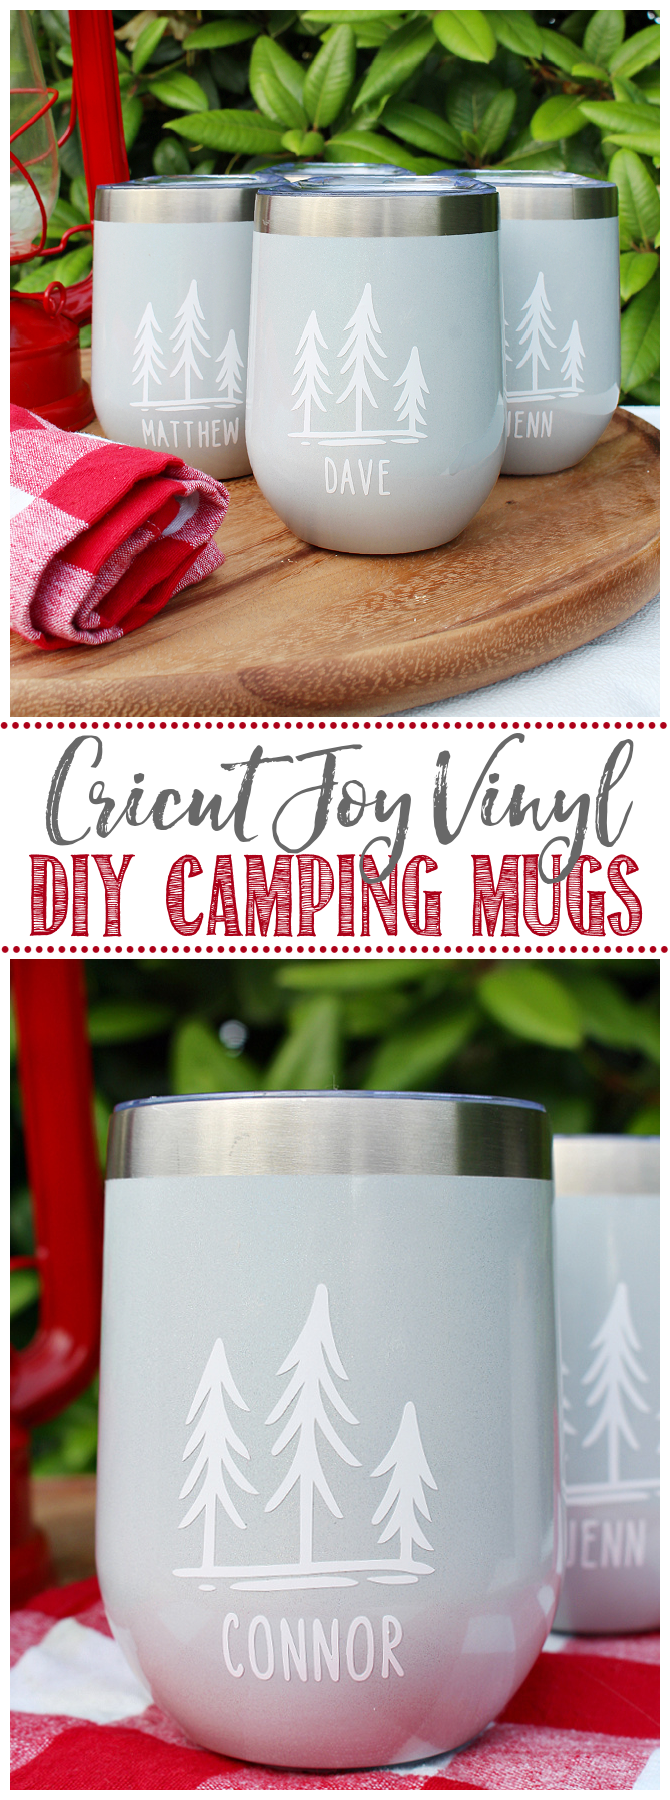 DIY camping mugs using Cricut Joy.